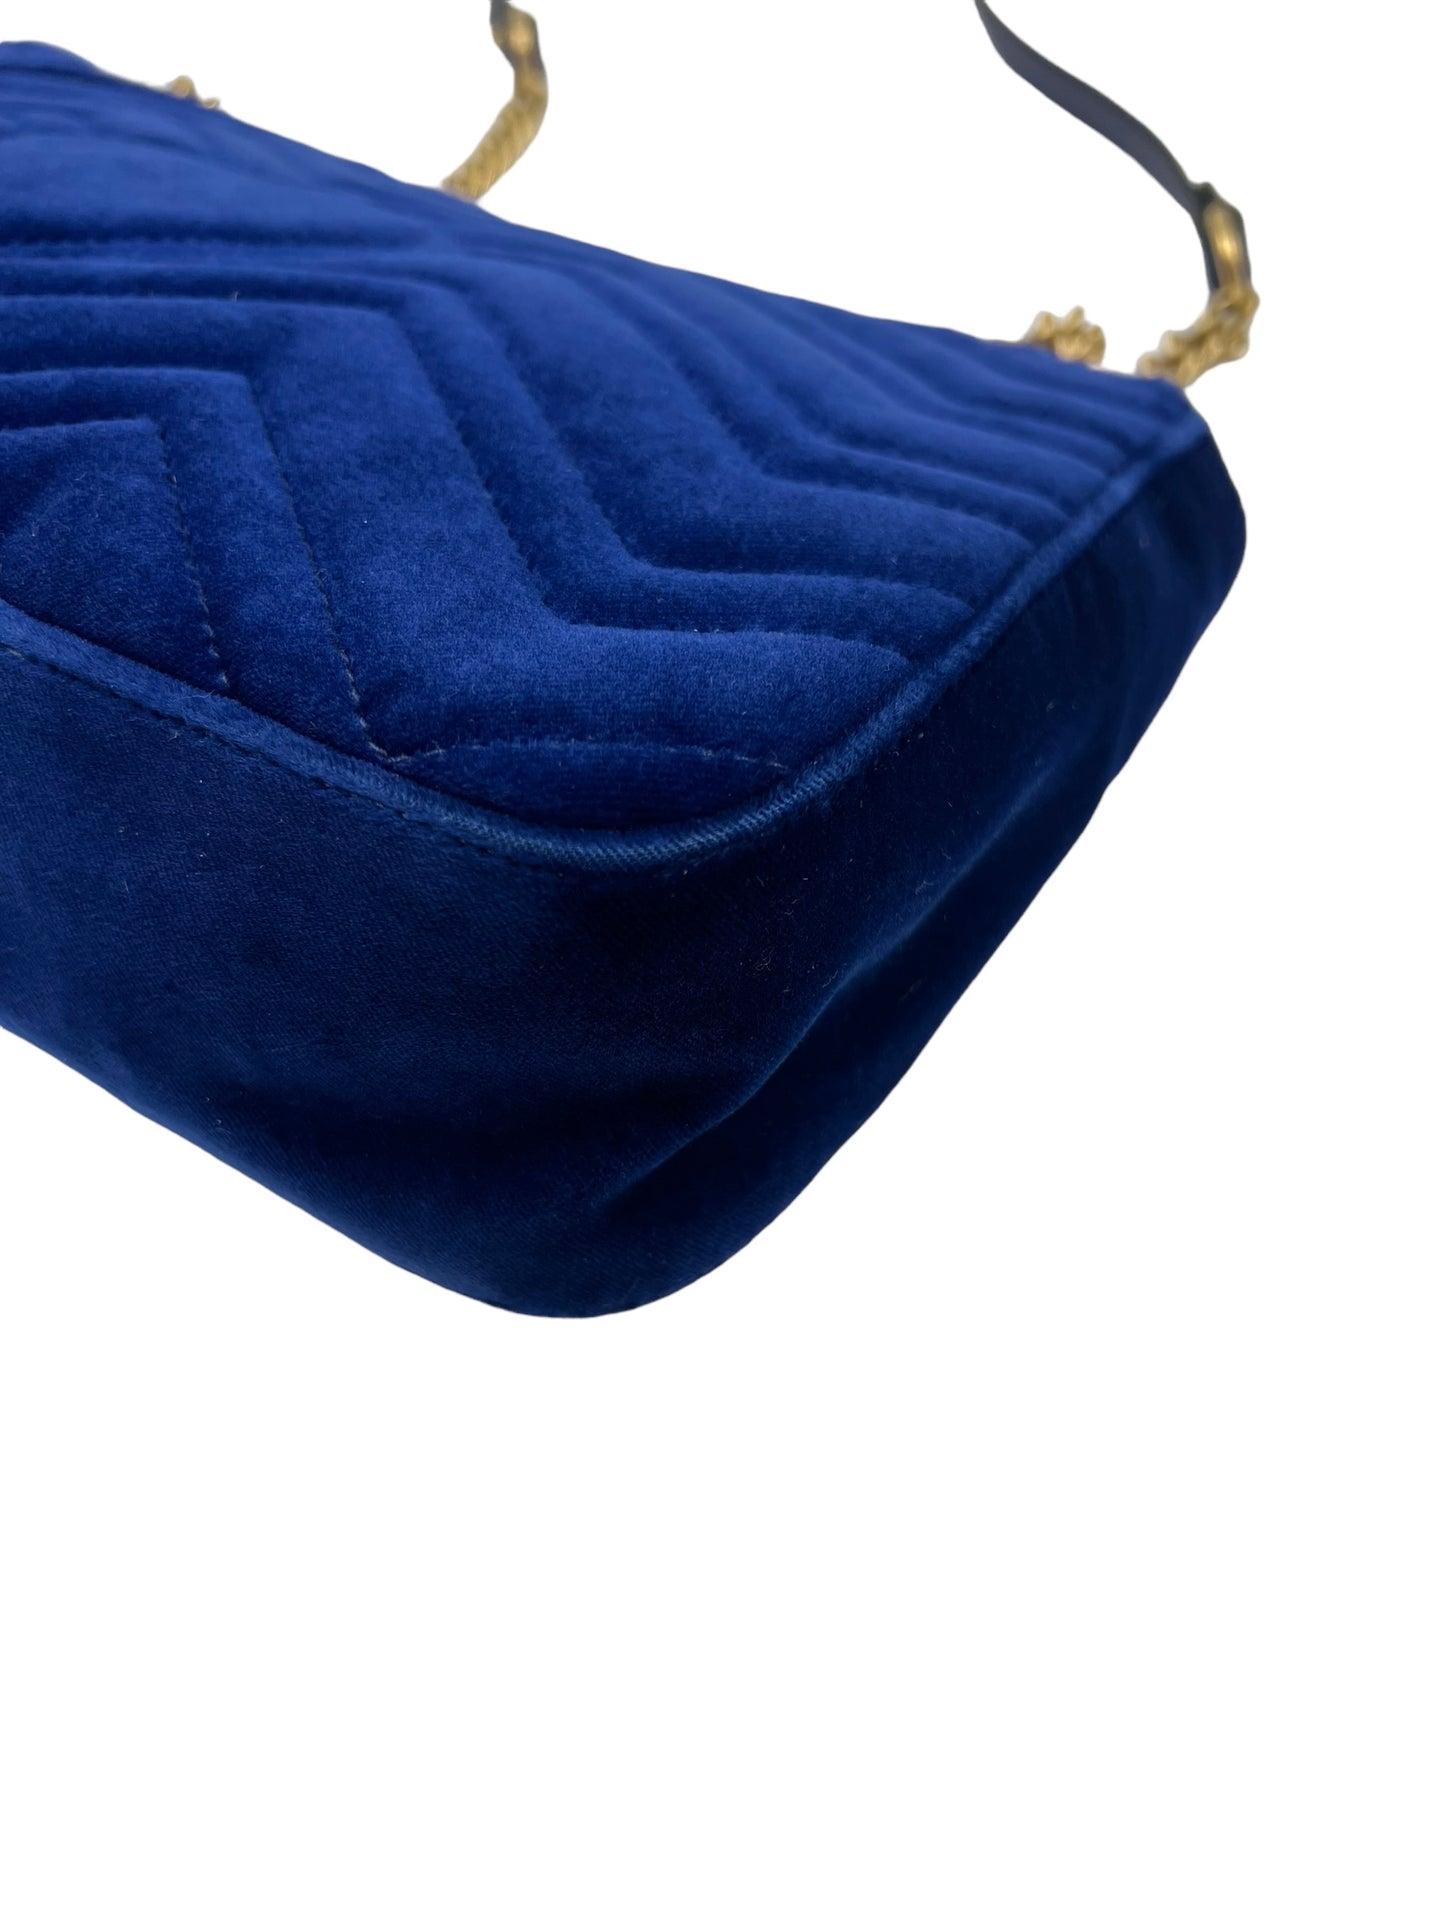 Gucci Blue Velvet Embroidered GG Modern Marmont Shoulder Bag